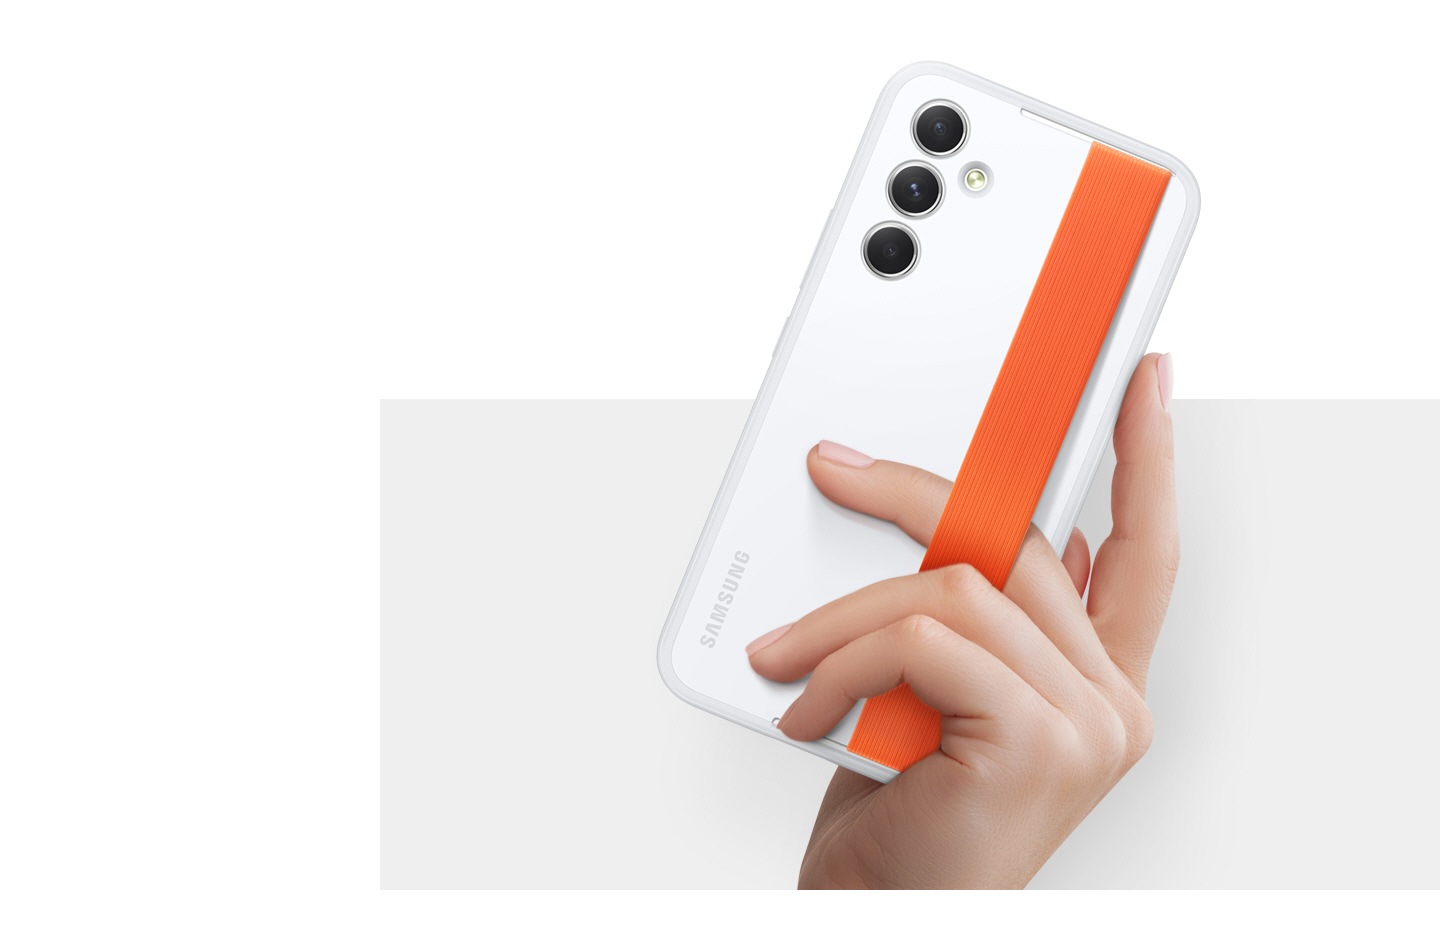 Una mano sostiene un dispositivo Galaxy con un estuche blanco Haze Grip con una correa naranja.